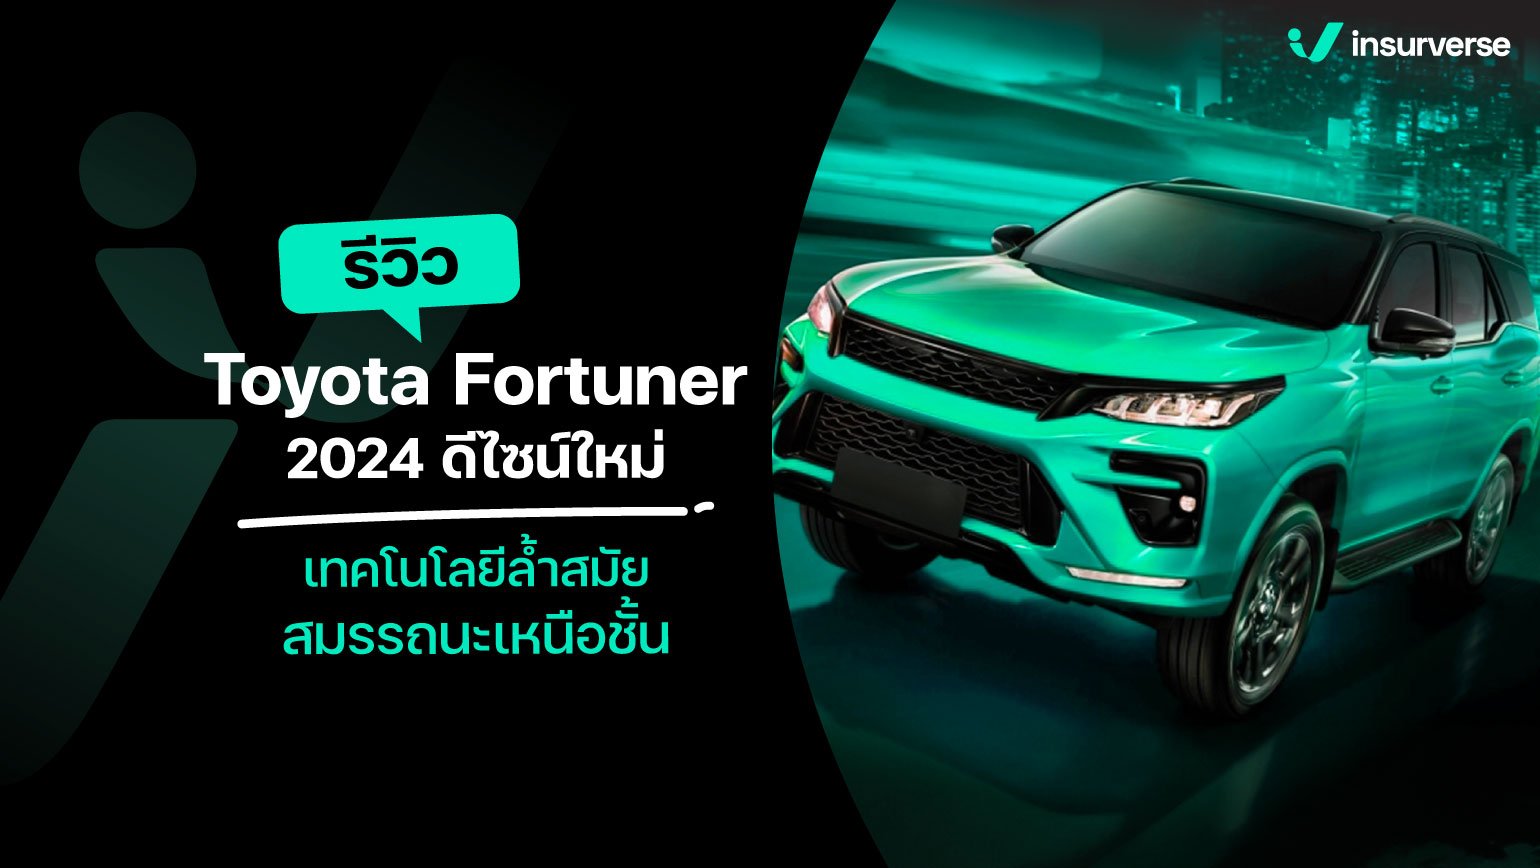 รีวิว Toyota Fortuner 2024 : ดีไซน์ใหม่ เทคโนโลยีล้ำสมัย สมรรถนะเหนือชั้น